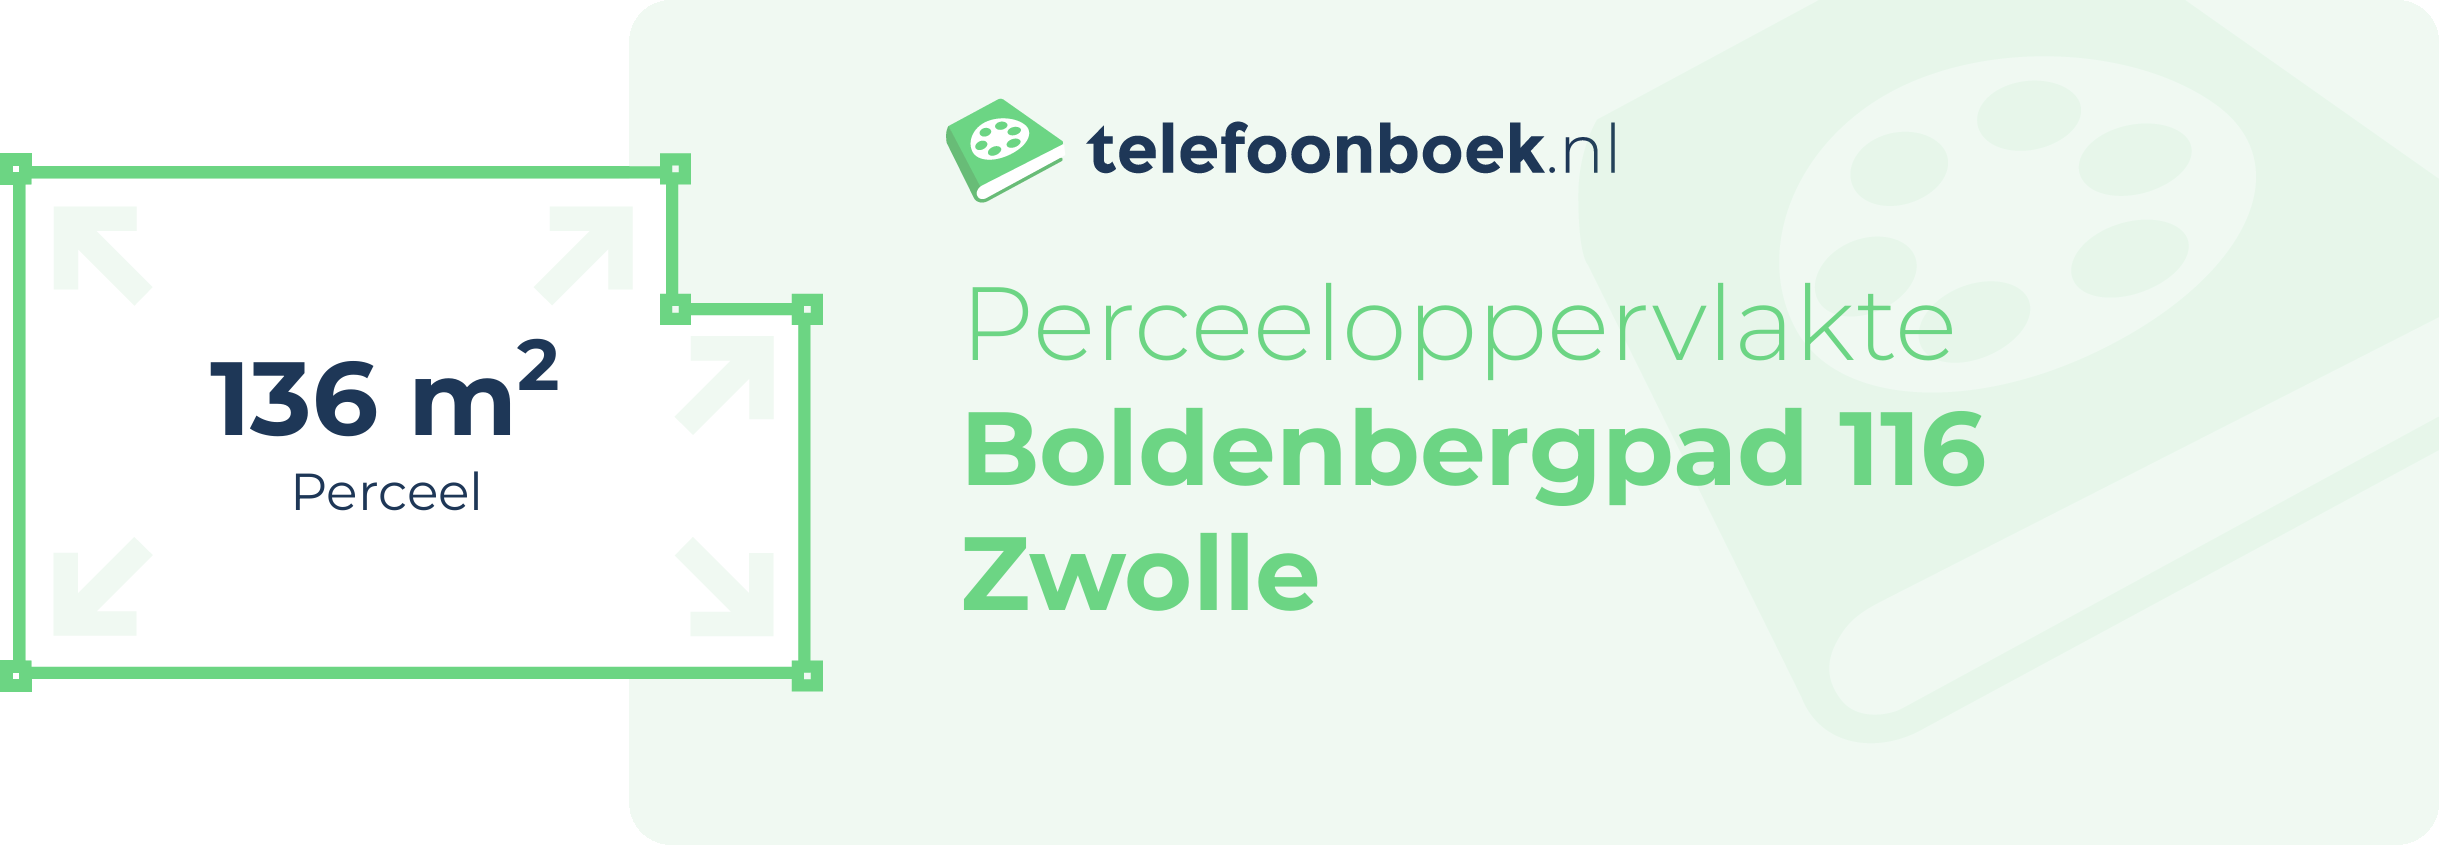 Perceeloppervlakte Boldenbergpad 116 Zwolle